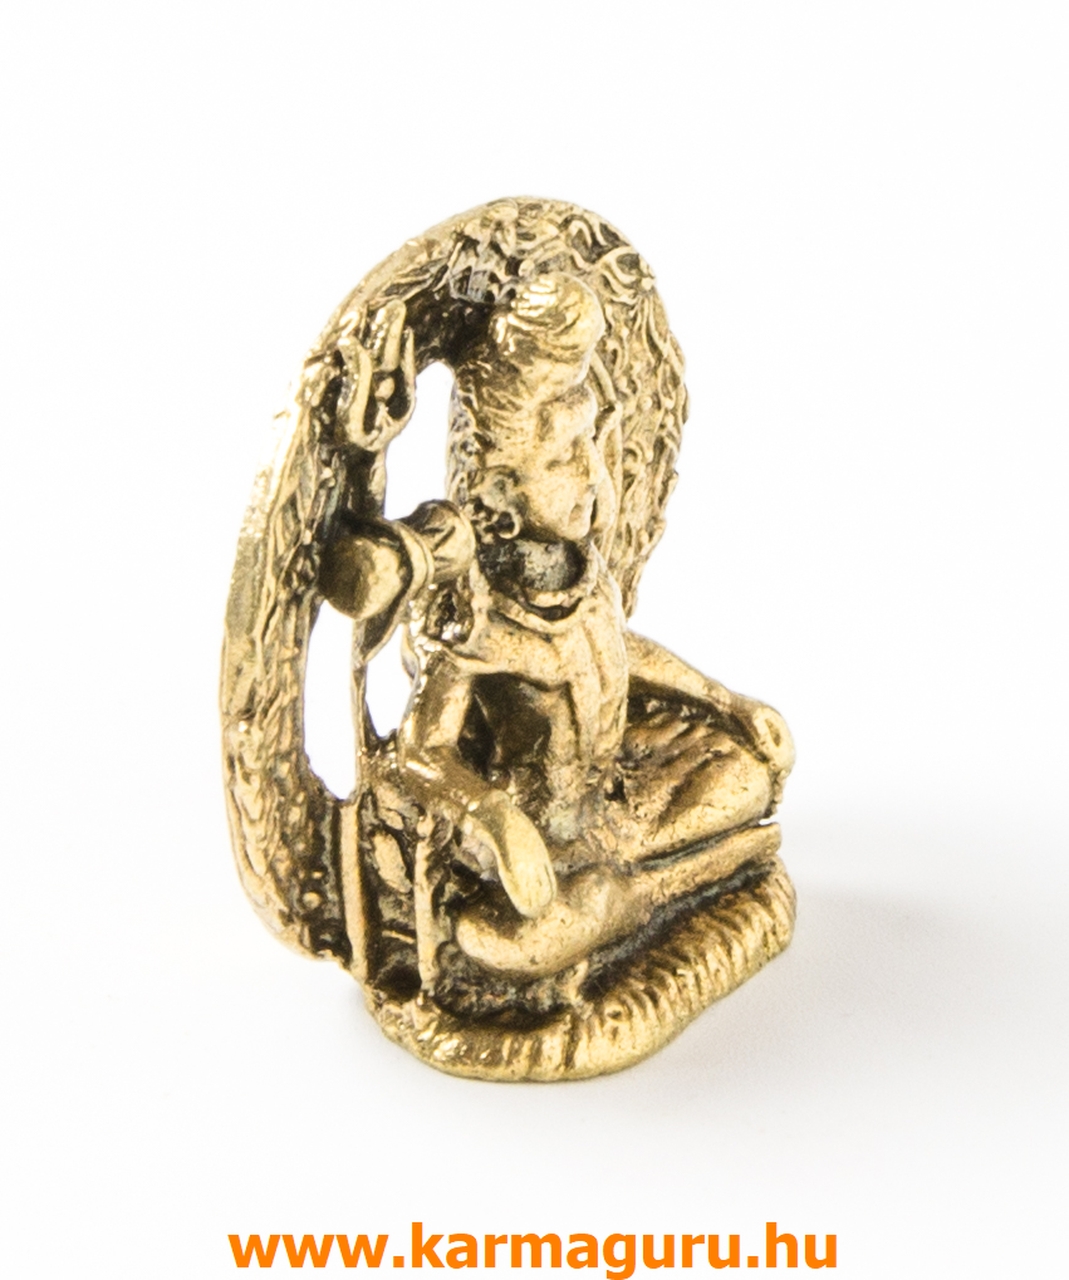 Shiva réz mini szobor - 3 cm